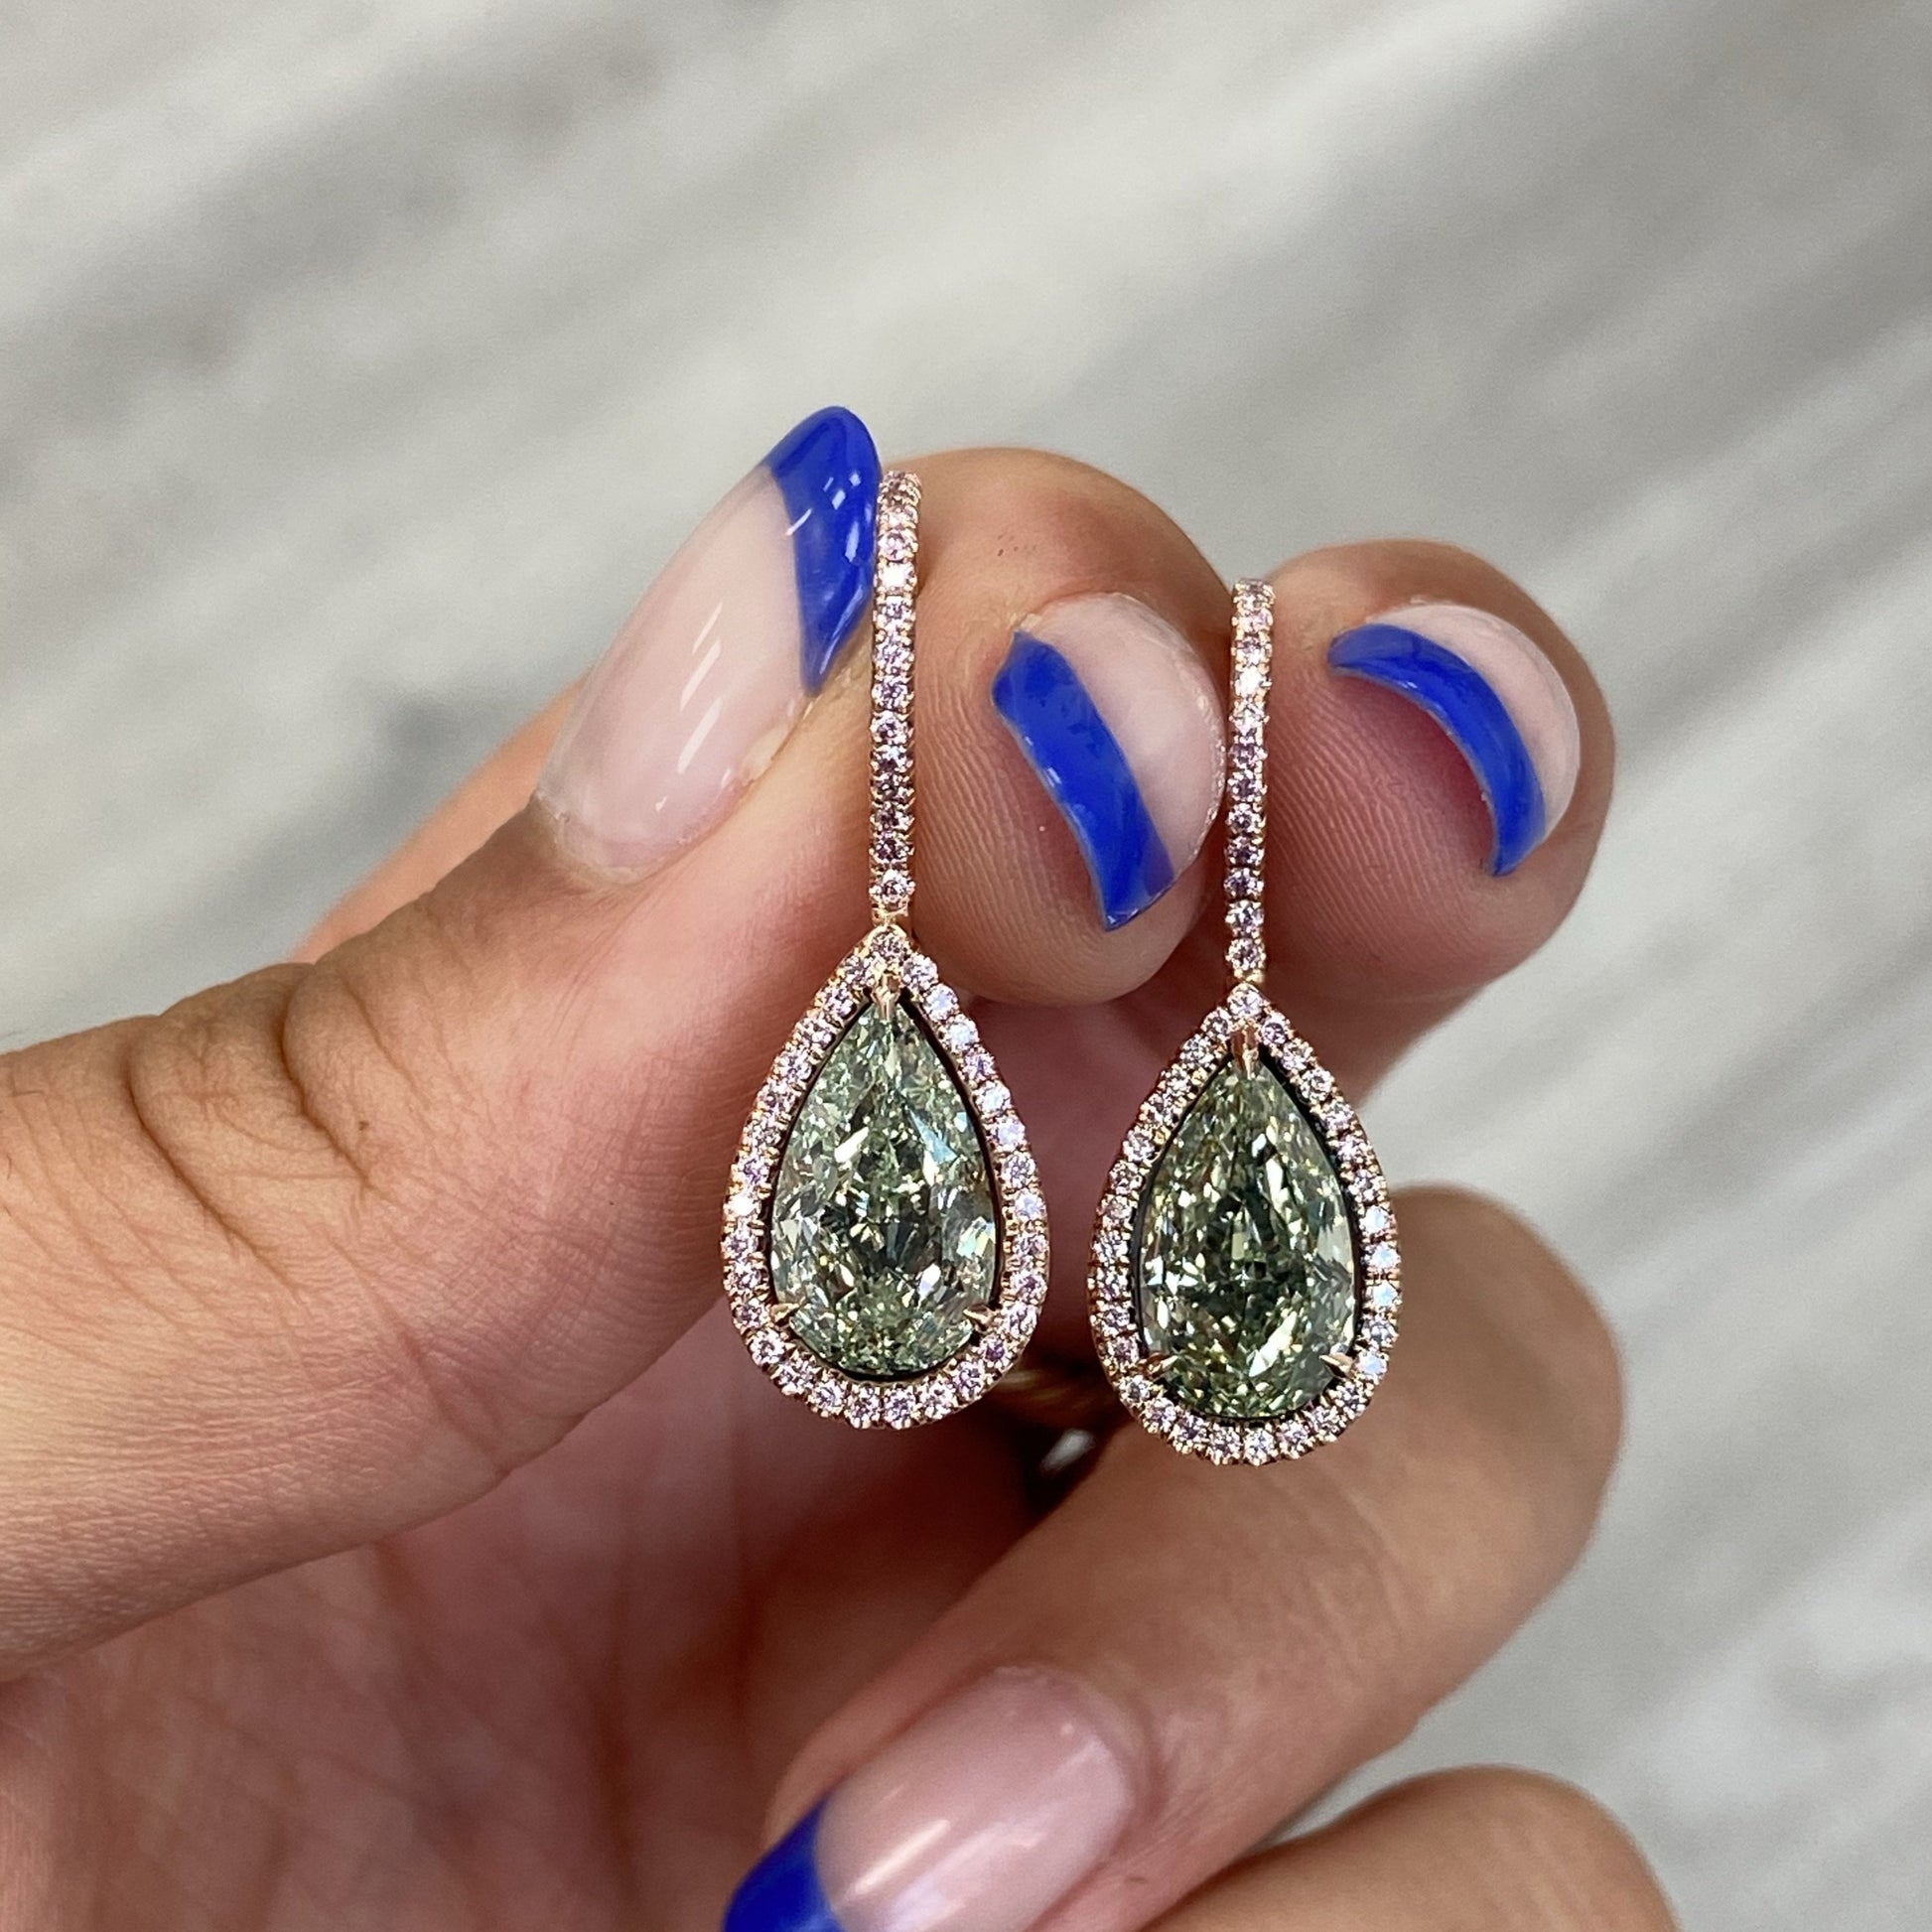 Green diamond earrings